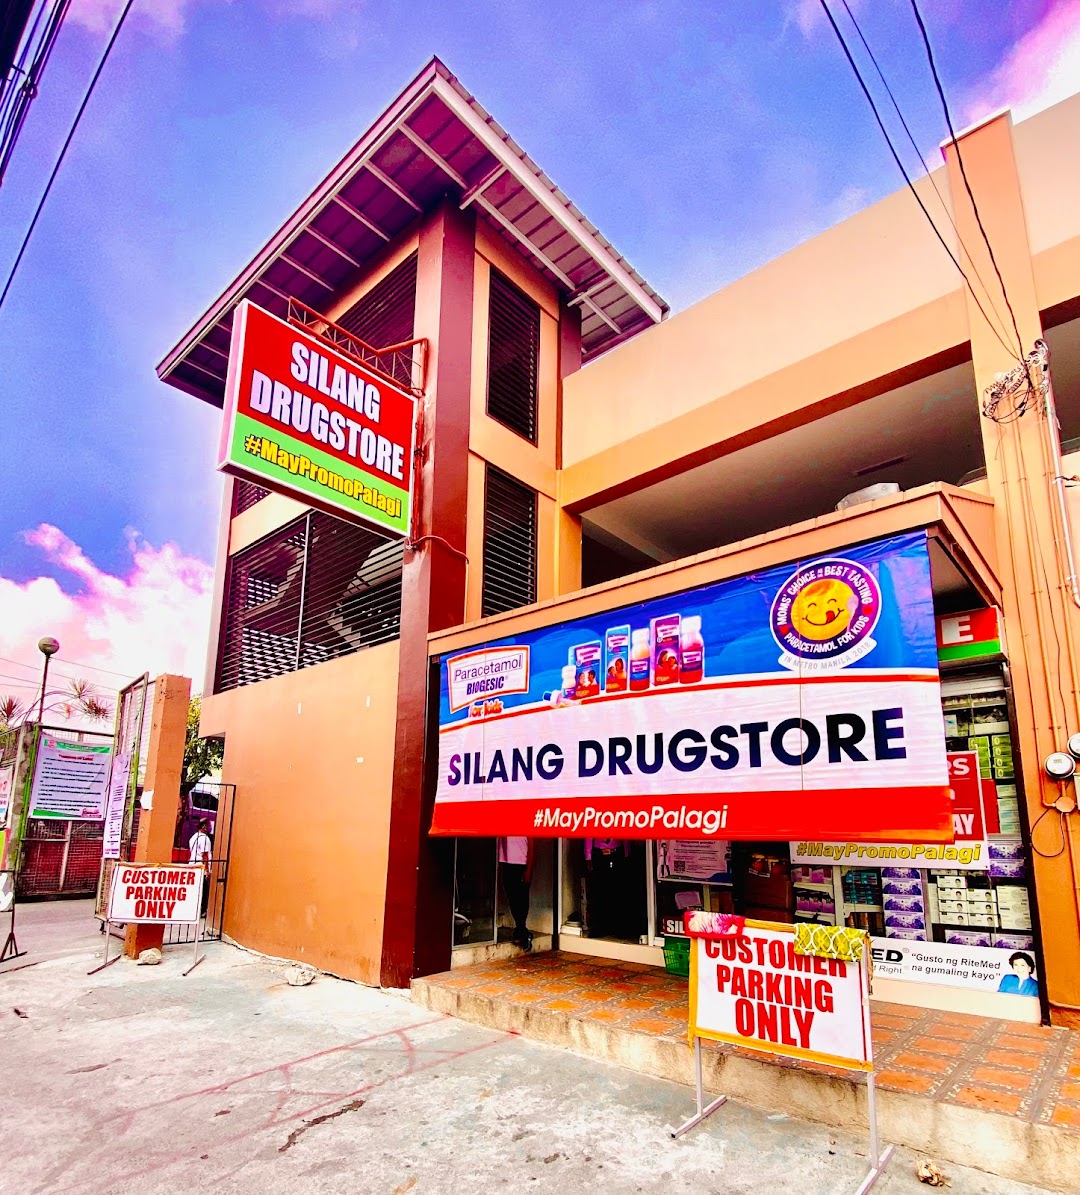 Silang Drugstore